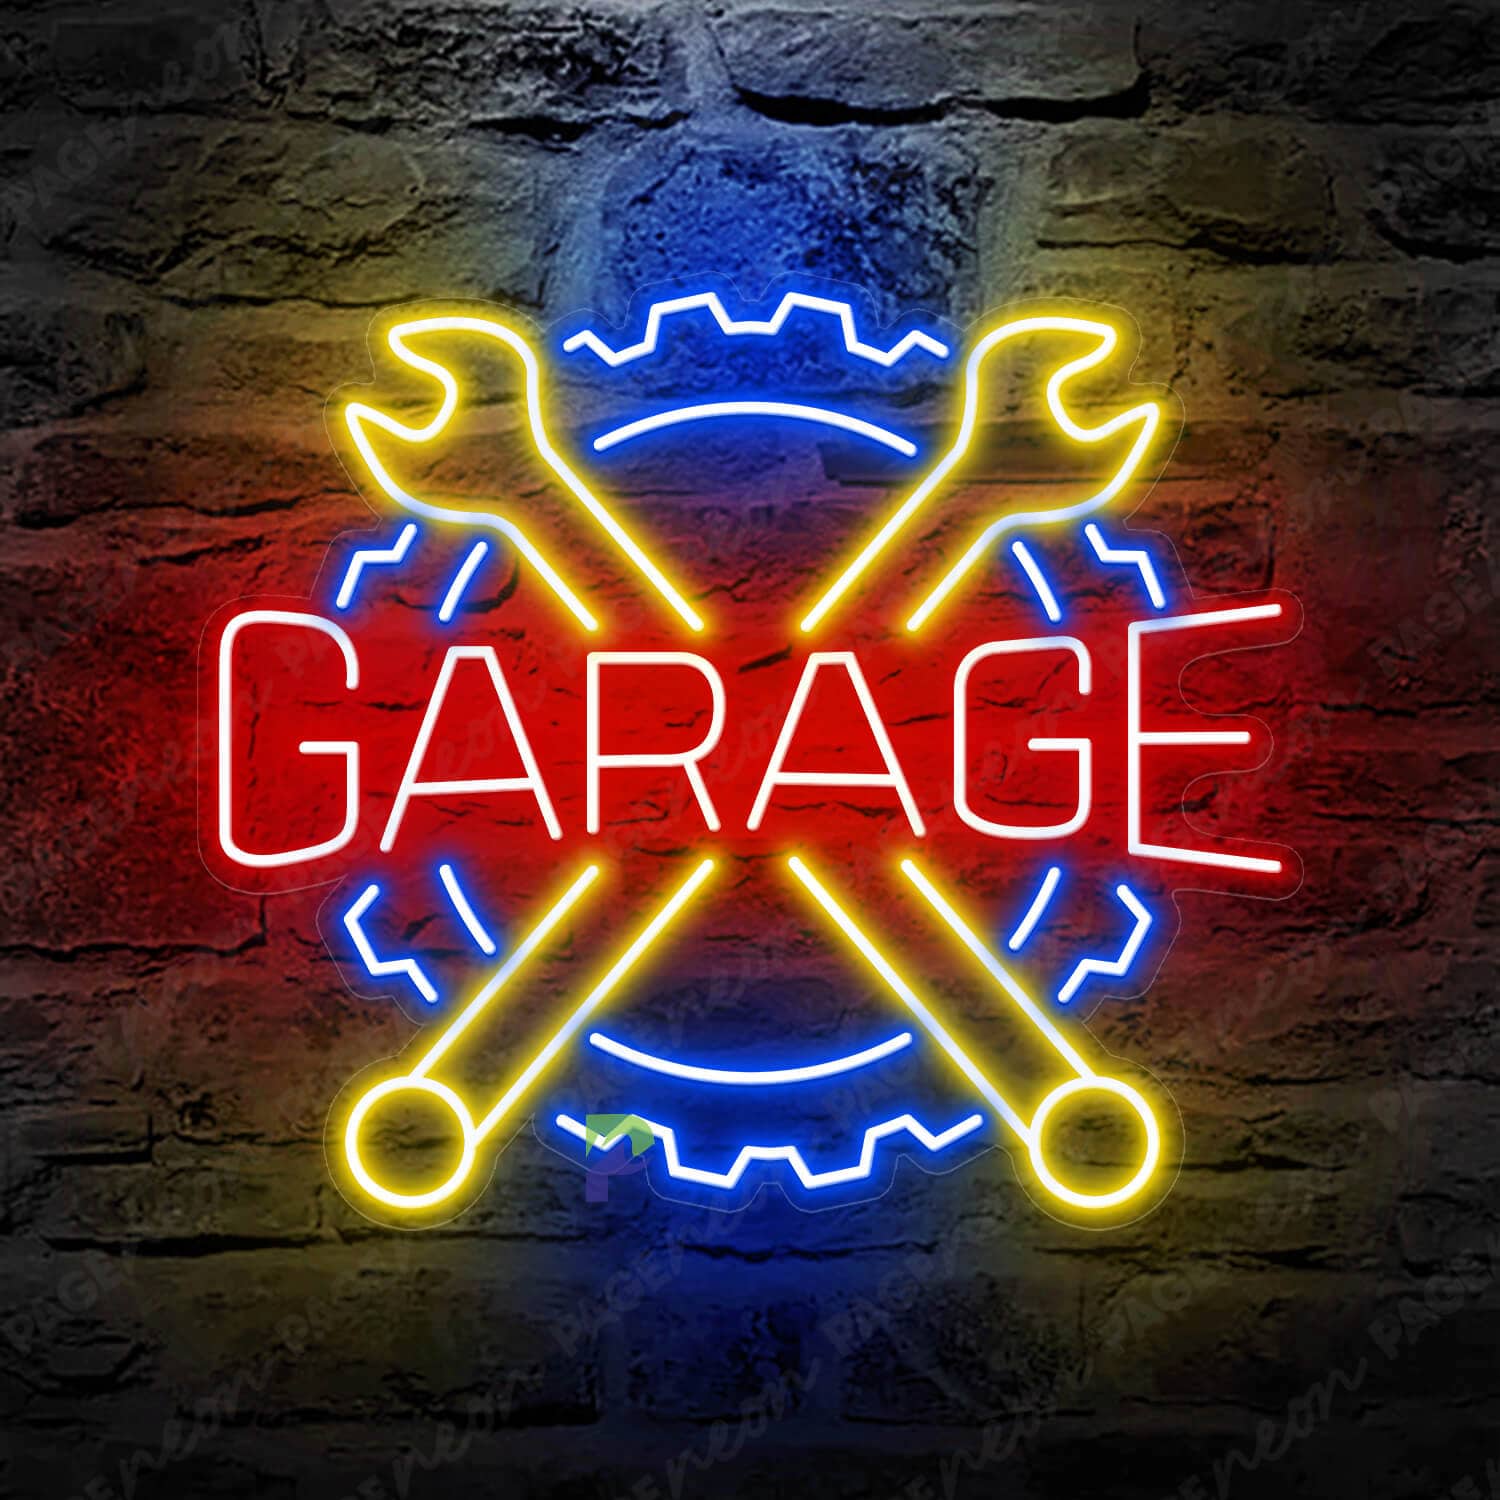 Neon Garage Sign Wheel Led Light Blue